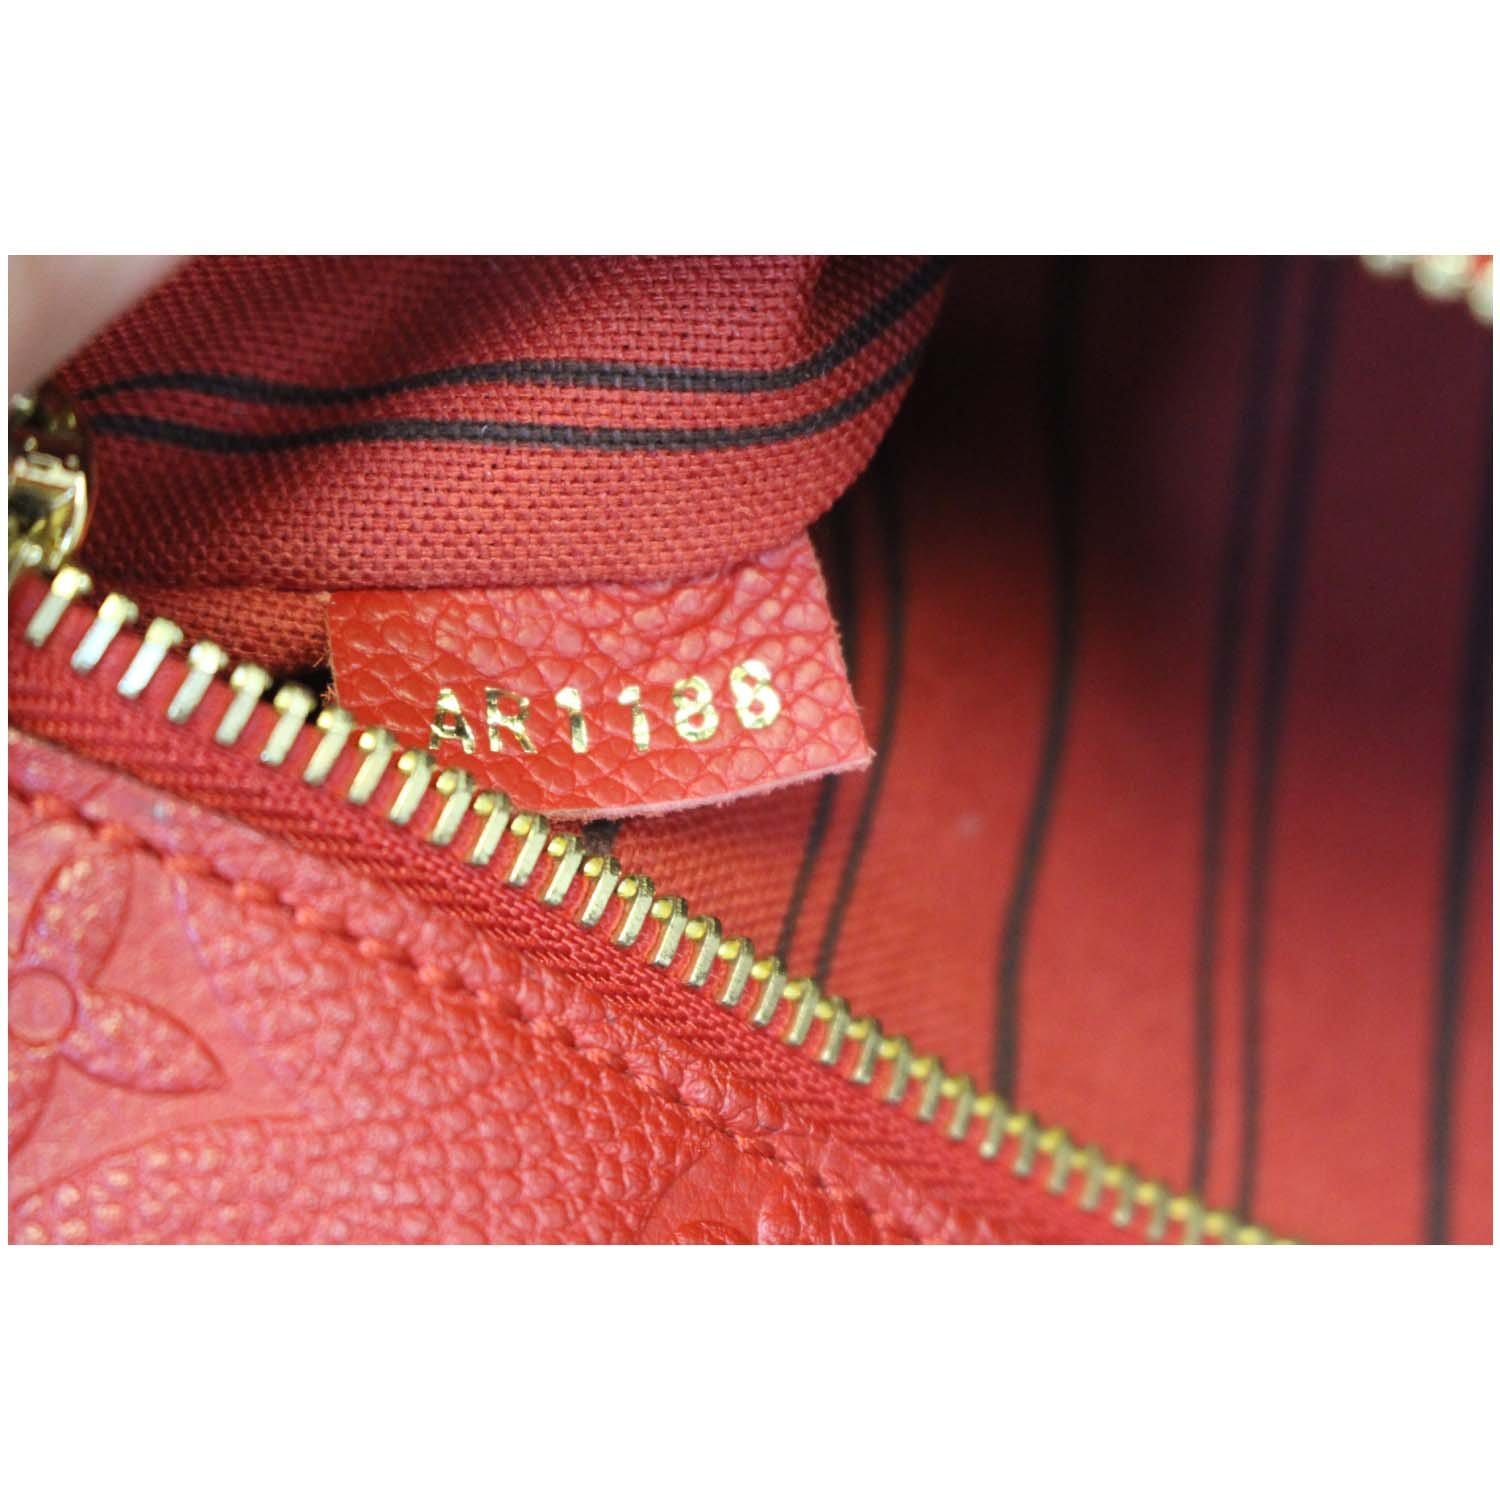 Louis Vuitton Pochette Métis Empreinte Cerise Red Leather Cross